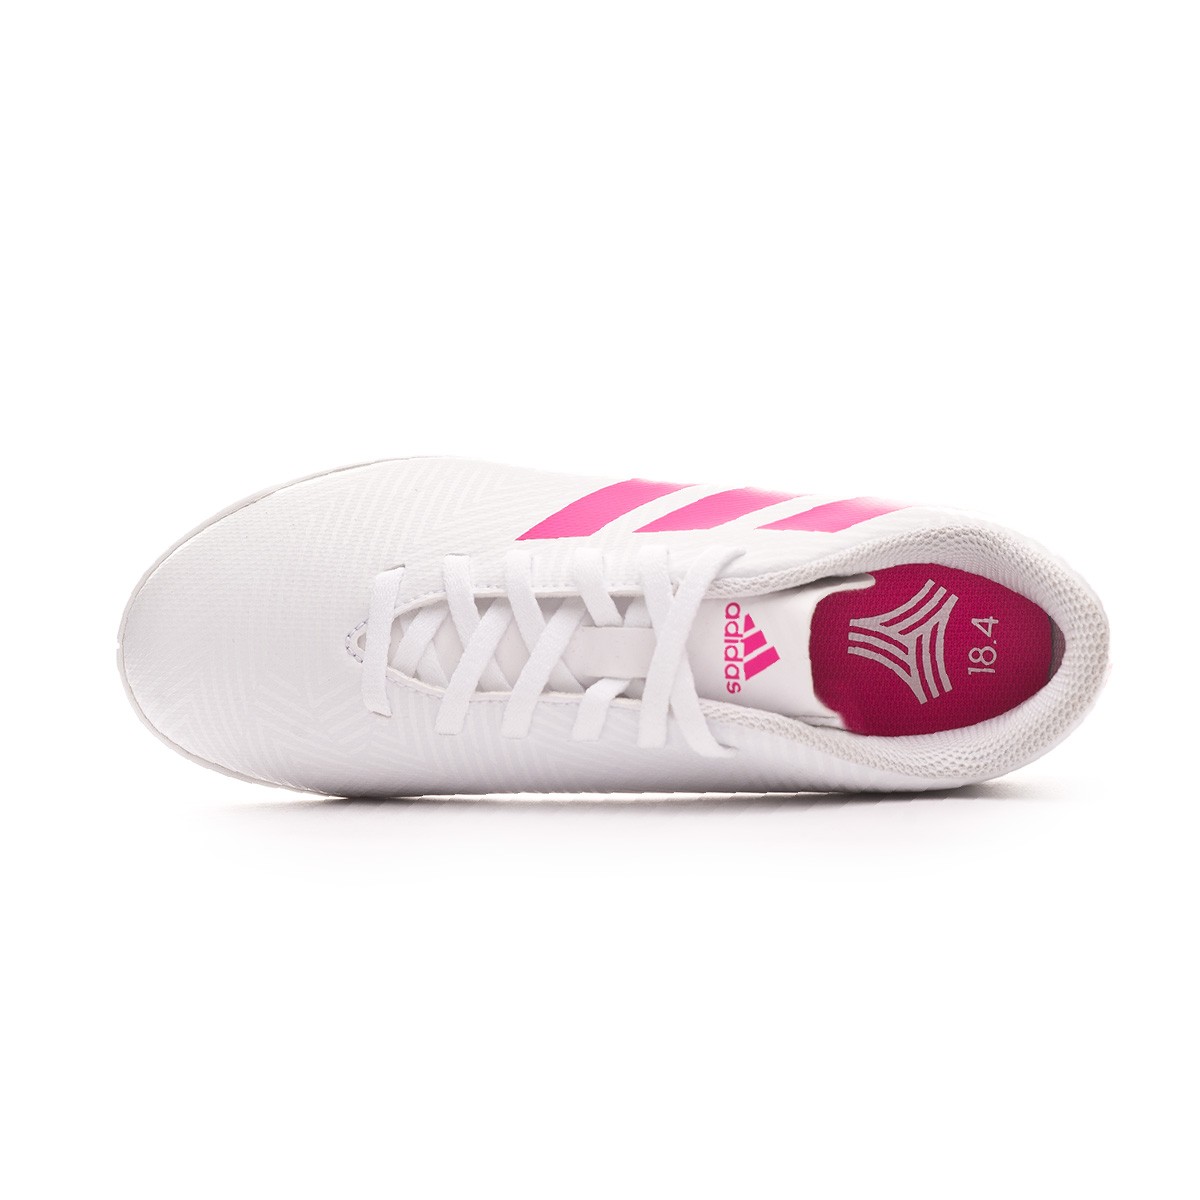 adidas nemeziz white pink